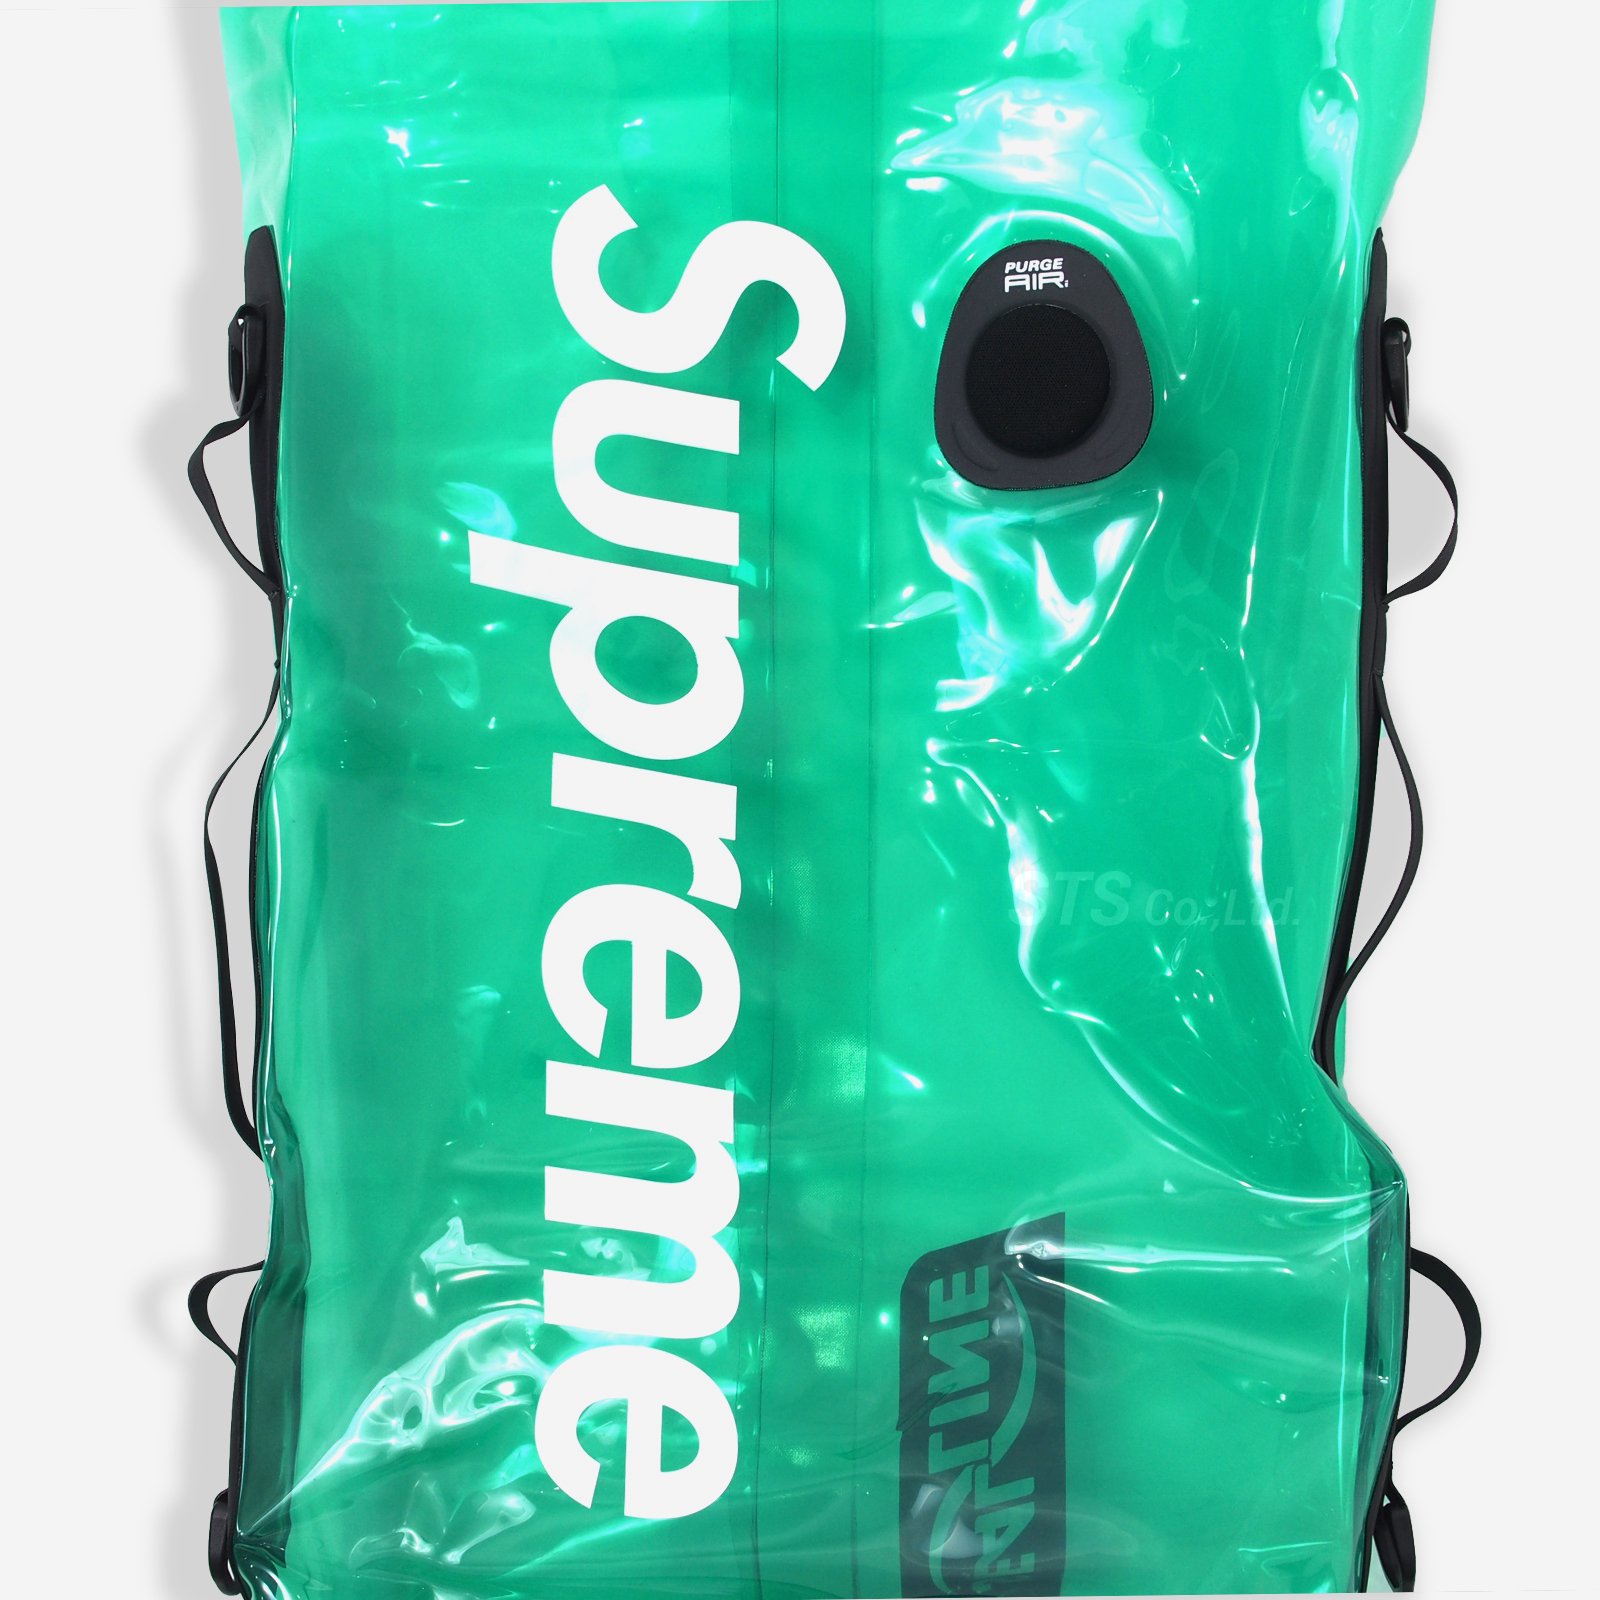 Supreme/SealLine Discovery Dry Bag 20L - UG.SHAFT